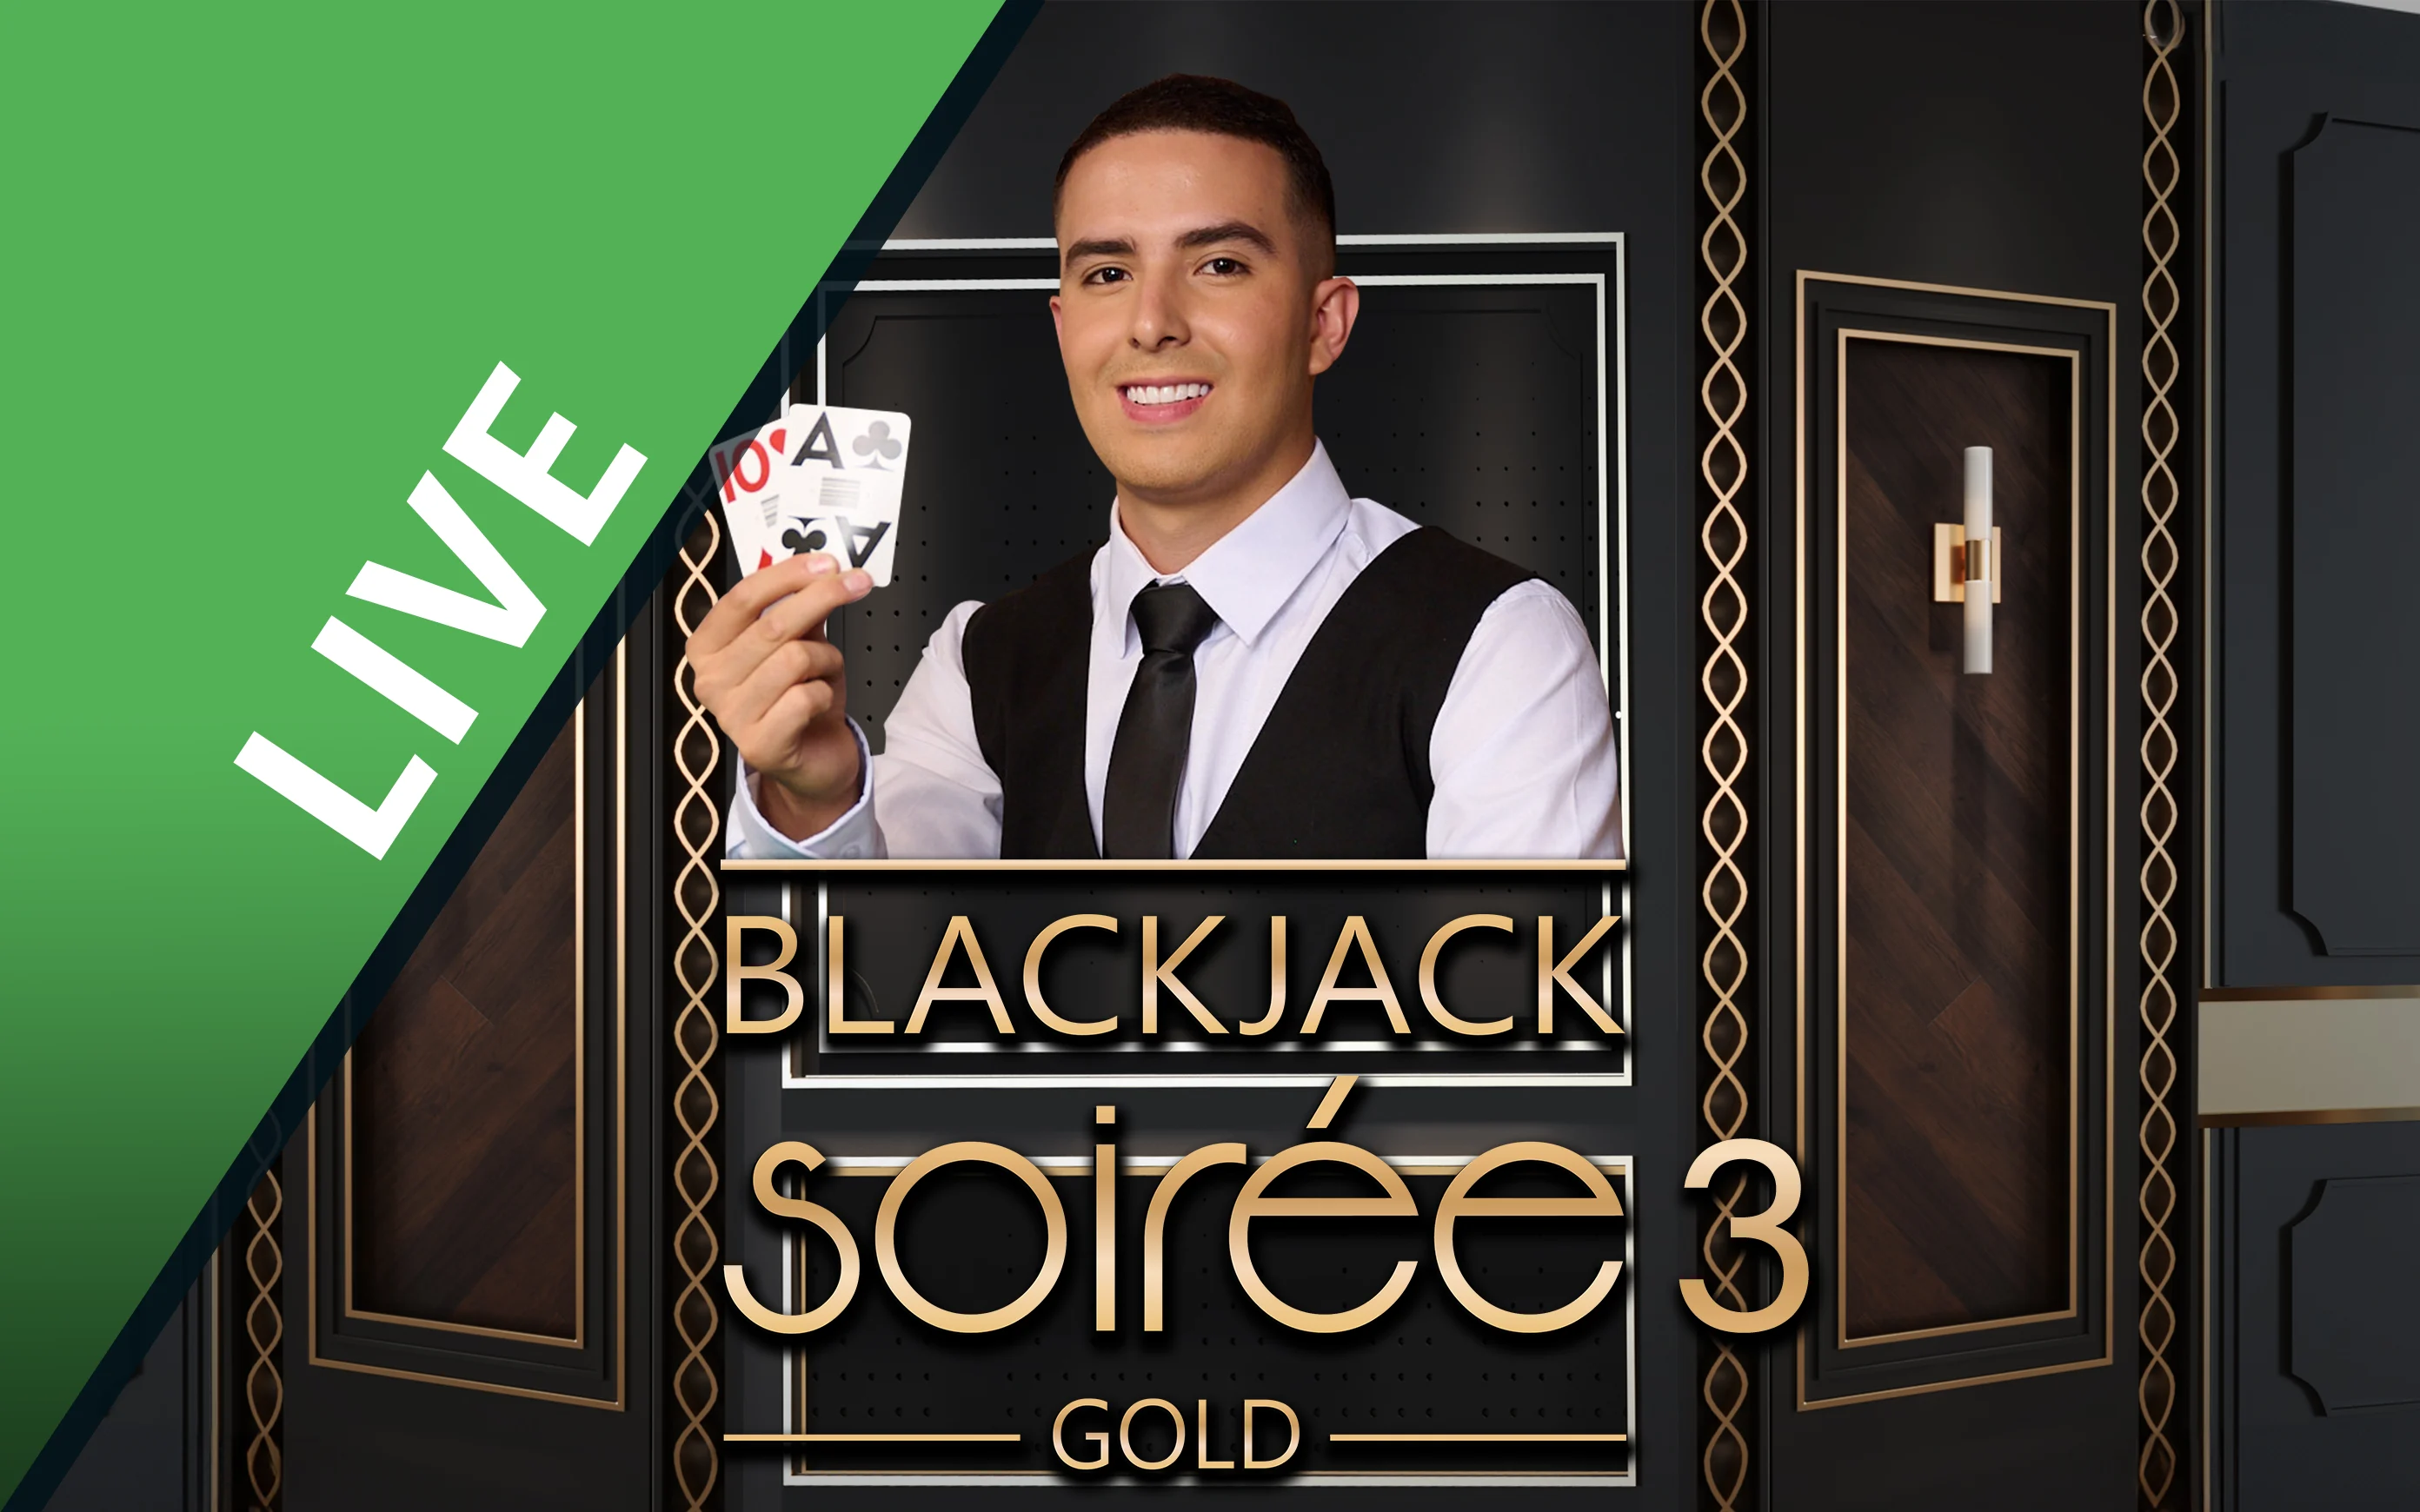 Joacă Blackjack Soirée Gold 3 în cazinoul online Starcasino.be